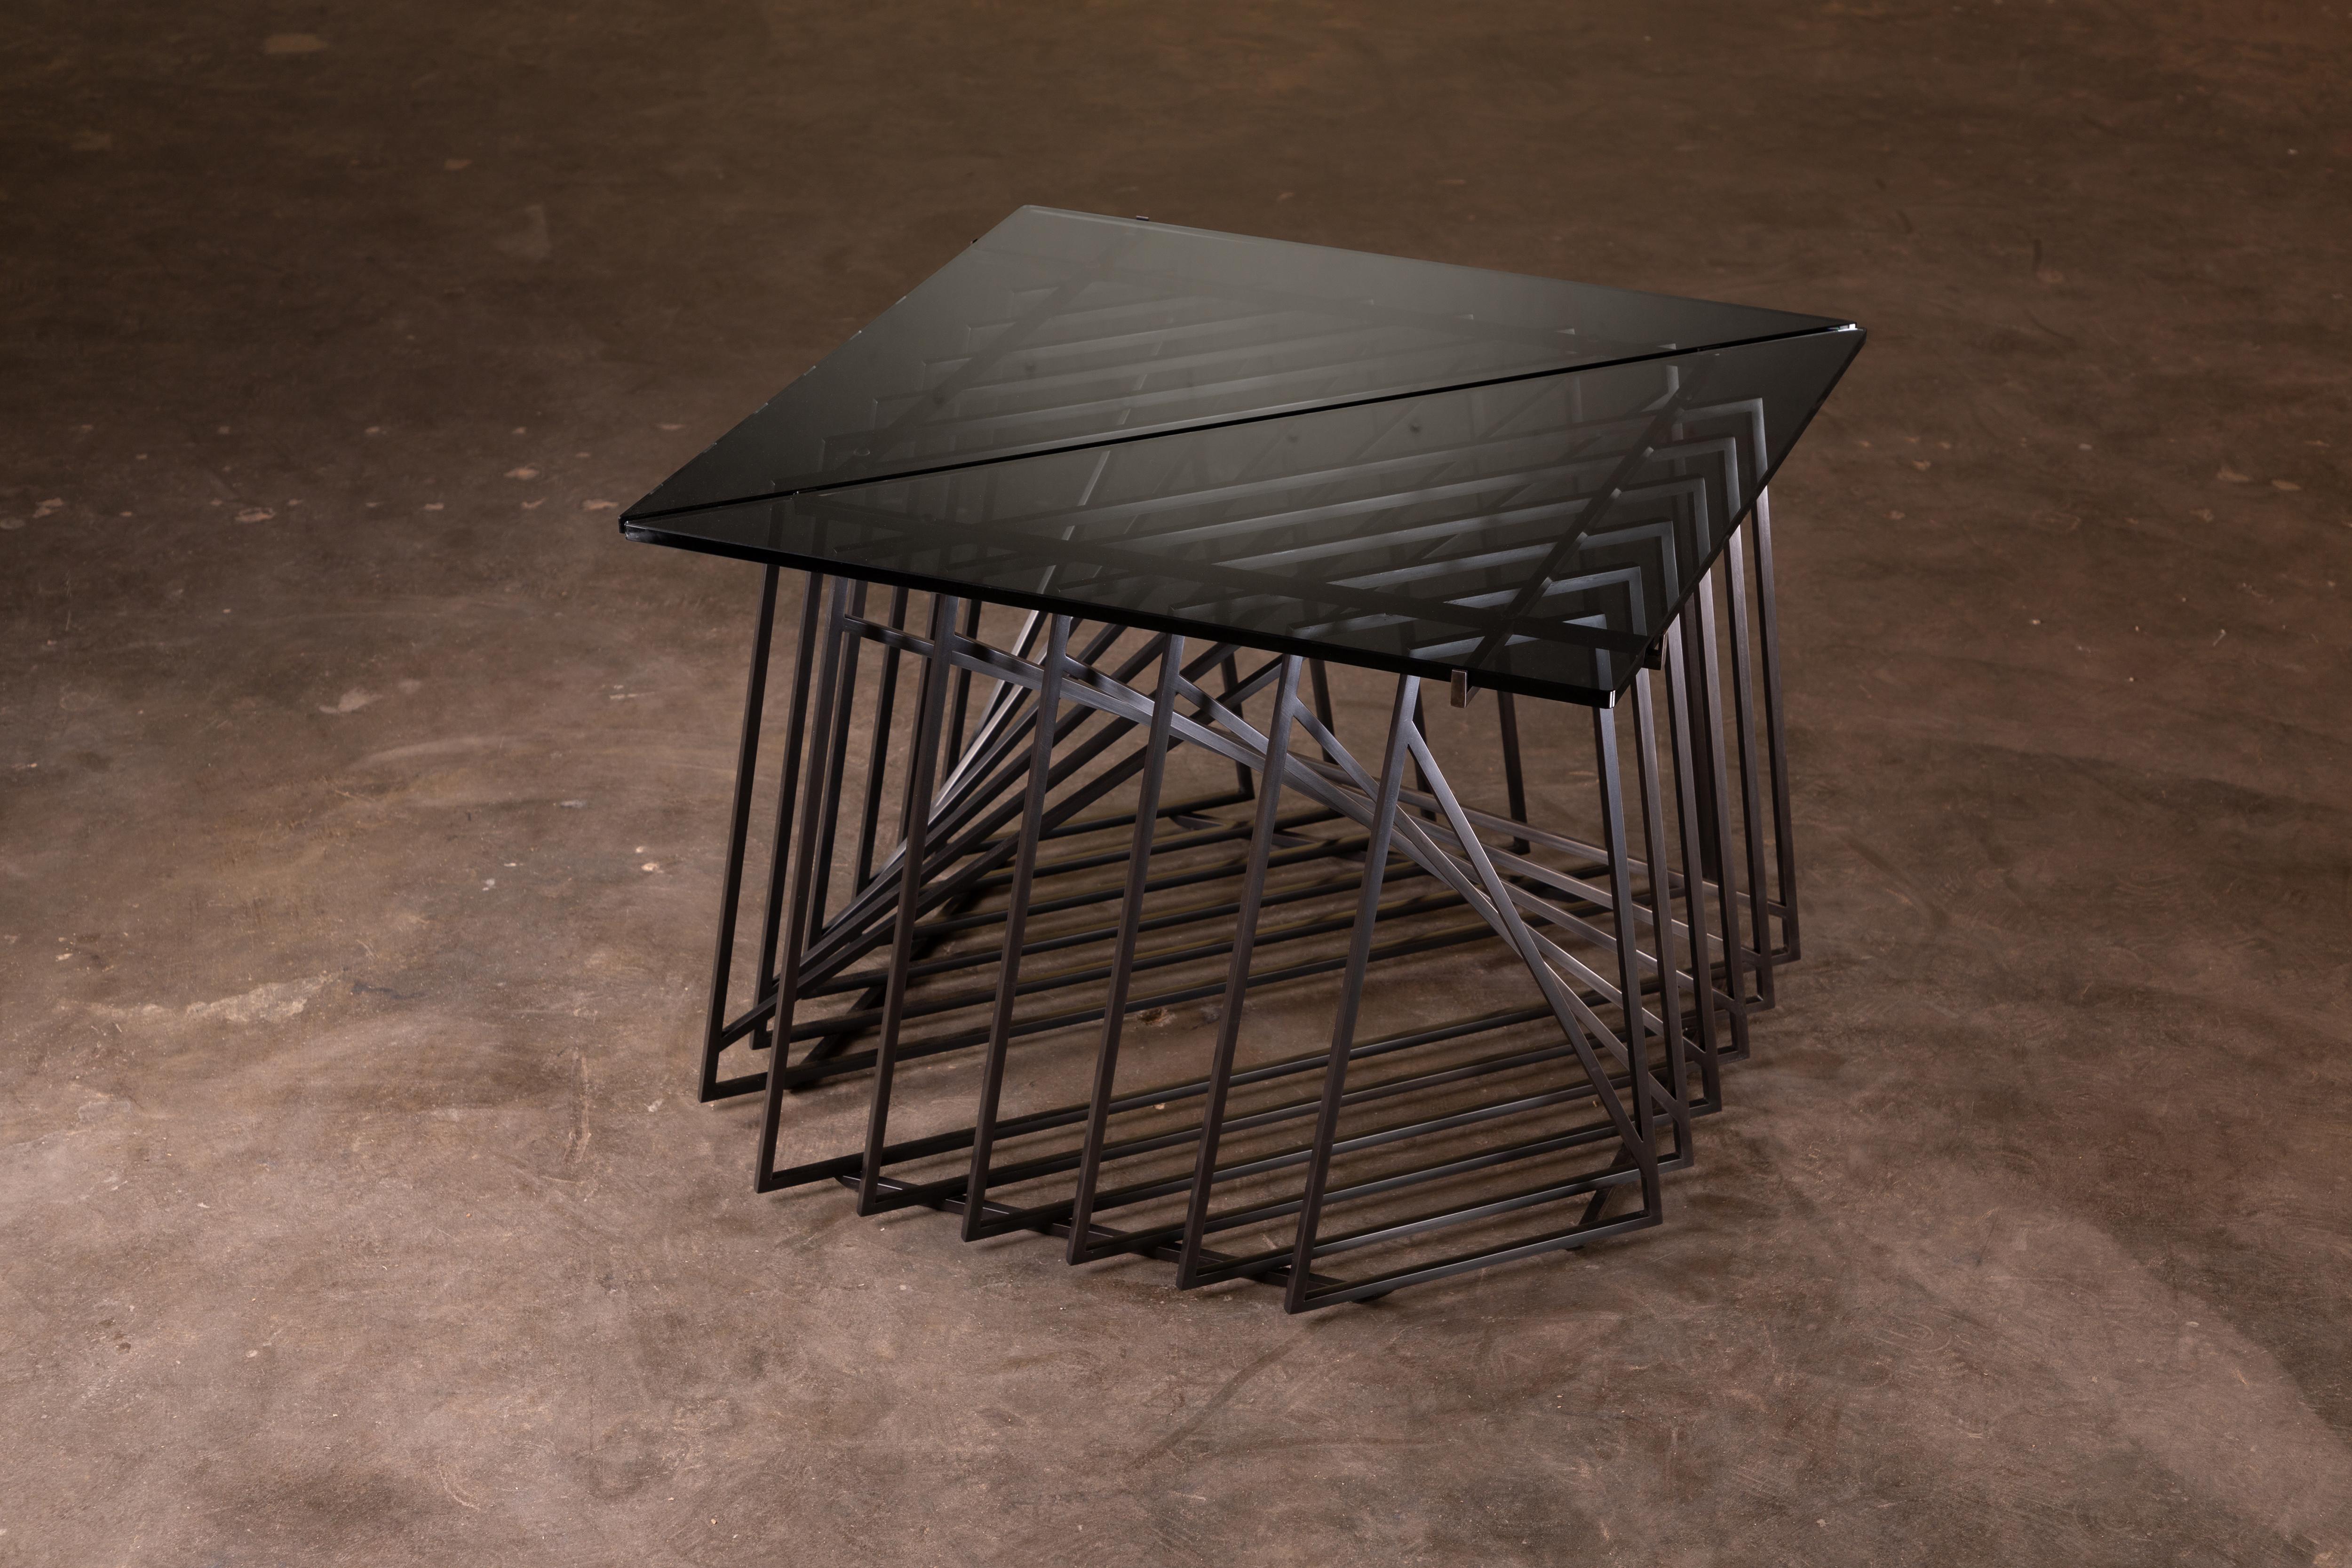 Die Nexus Beistelltische sind eine skulpturale Studie, fein konstruiert und mit satiniertem schwarzem Oxidstahl und rauchgrauem Glas verarbeitet. Die vielseitigen und modularen dreieckigen Tische können ganz individuell gestaltet werden, so dass sie